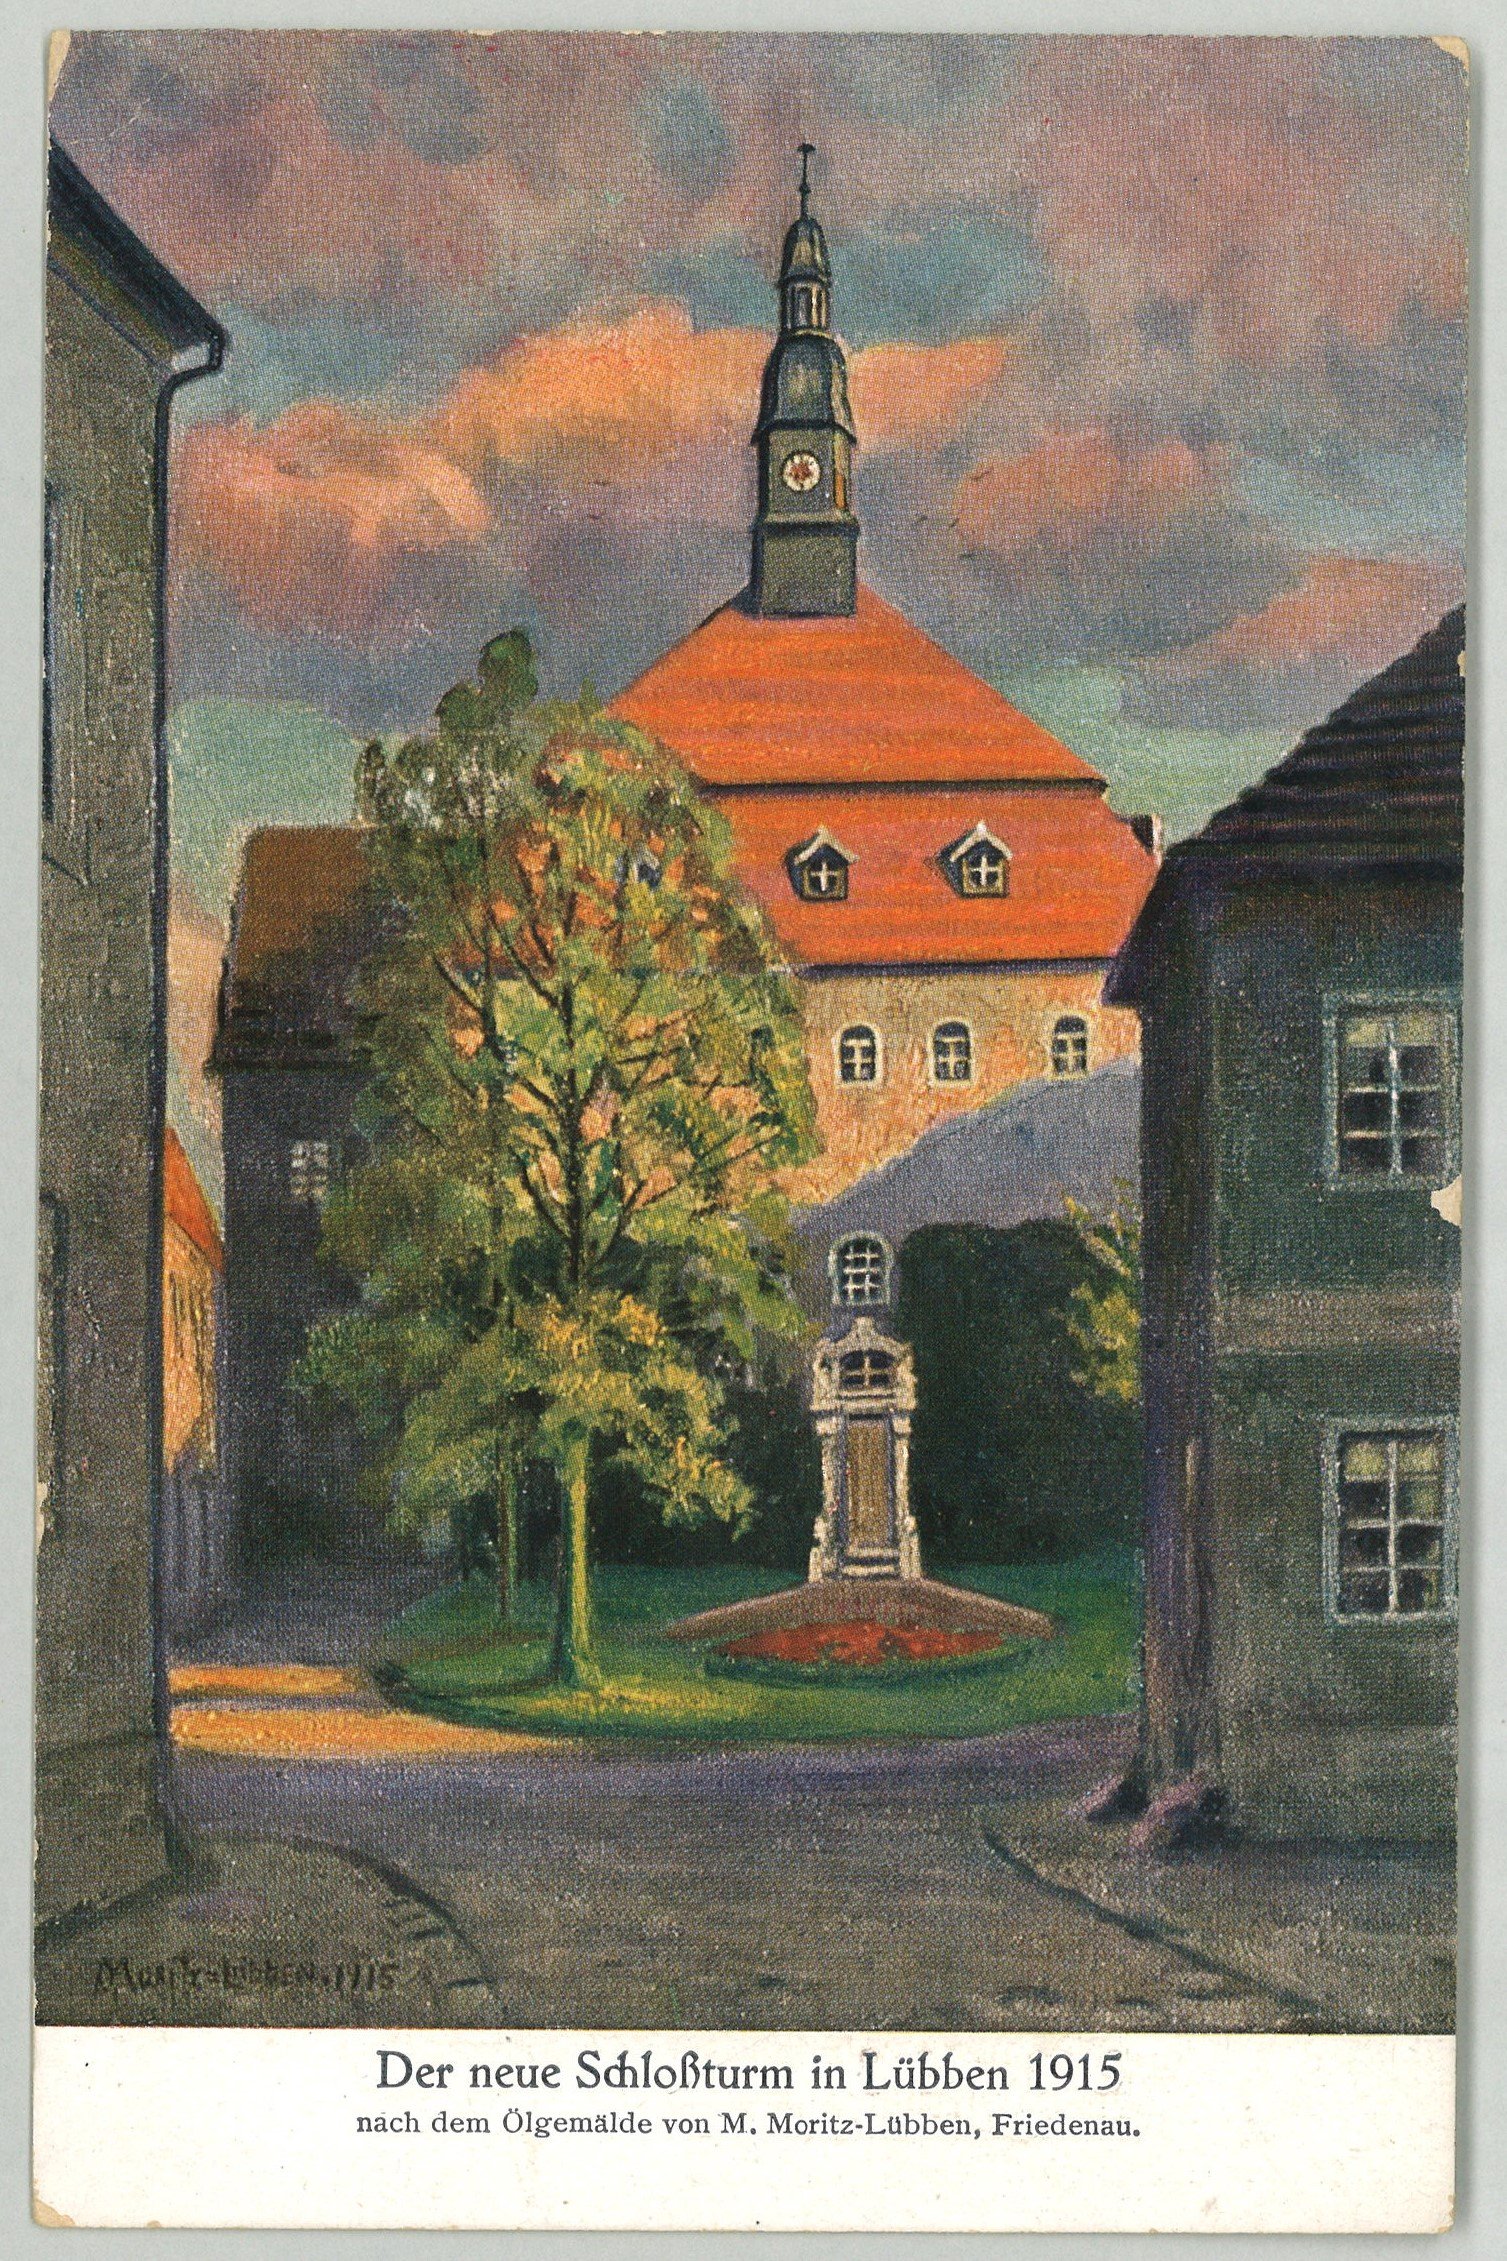 Lübben: Blick auf den neuen Schlossturm 1915 (Gemälde von Marie Elisabeth Moritz) (Landesgeschichtliche Vereinigung für die Mark Brandenburg e.V., Archiv CC BY)